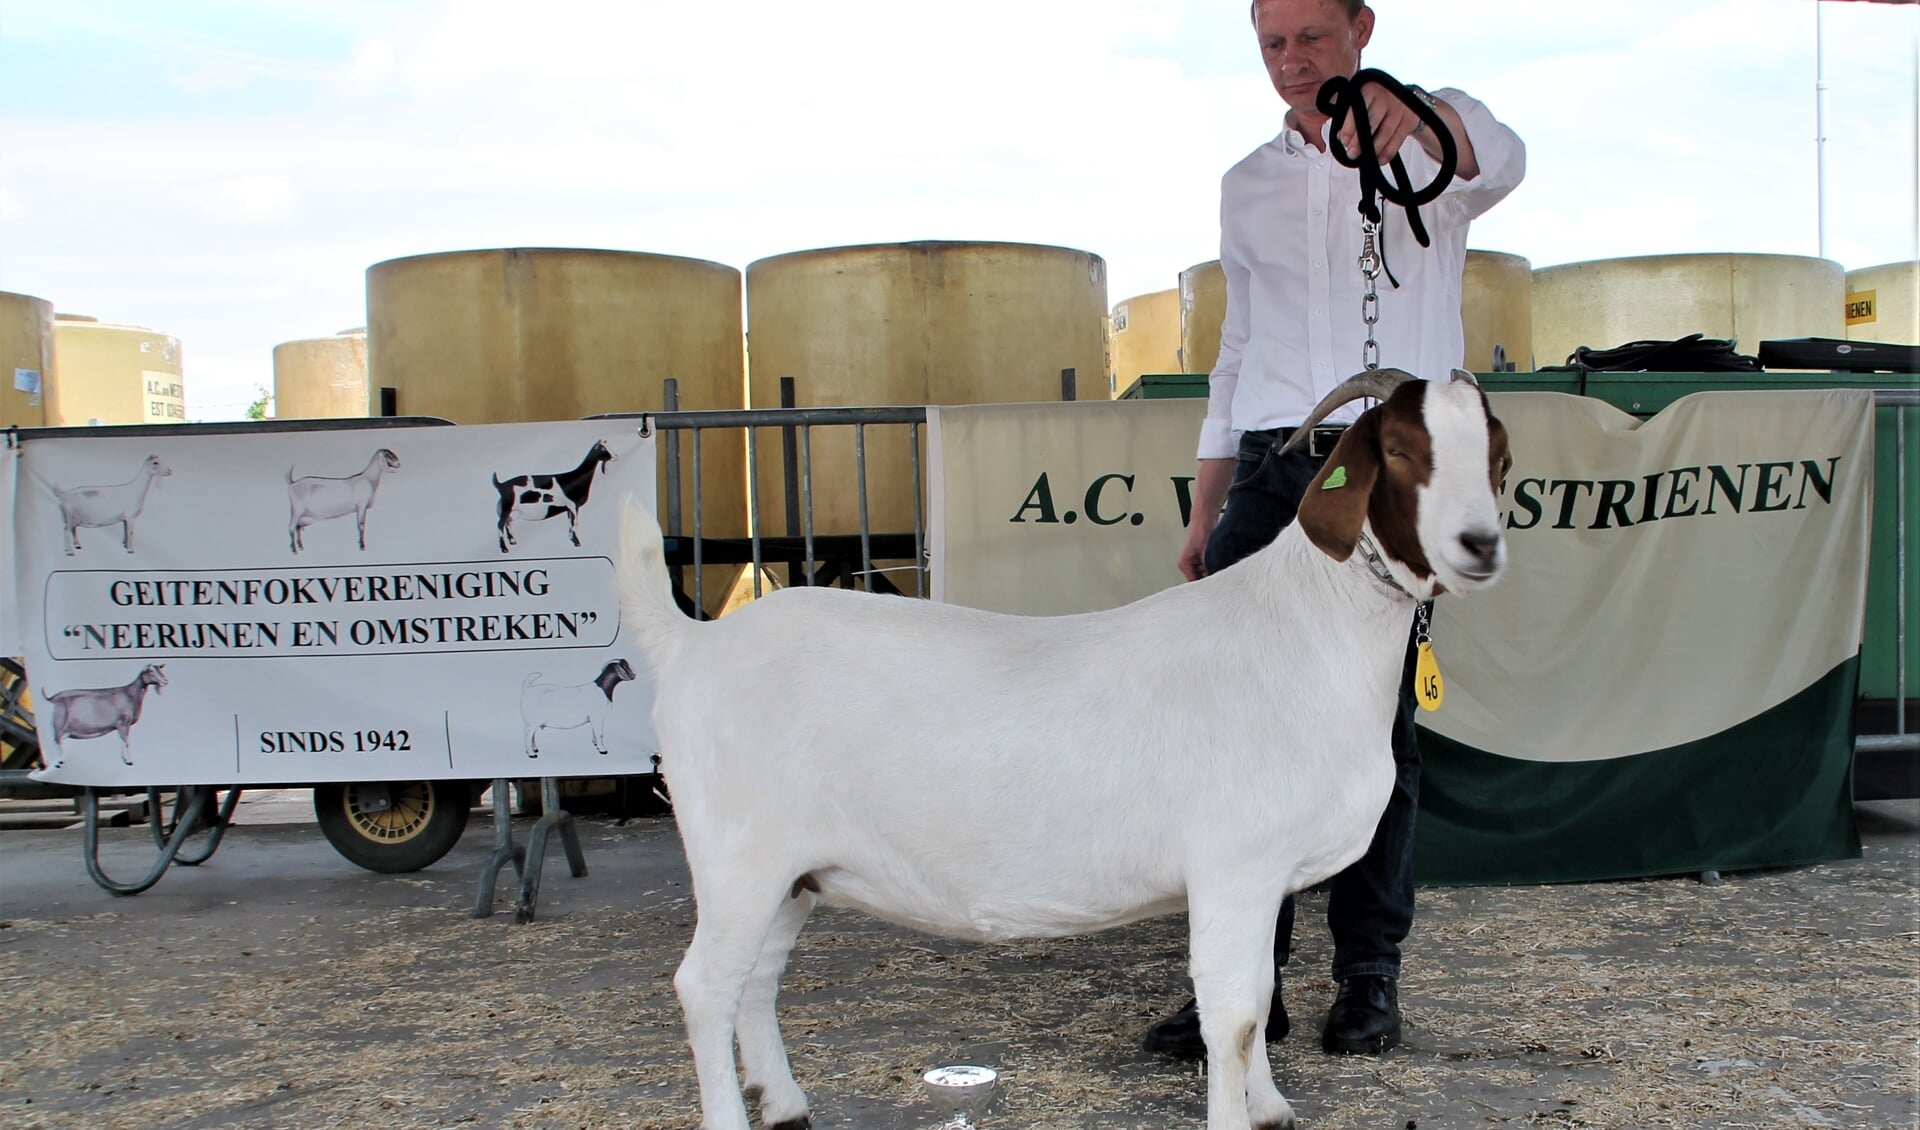 Amira werd uitgeroepen tot dagkampioen geiten tijdens de keuring van geitenfokvereniging Neerijnen en Omstreken.